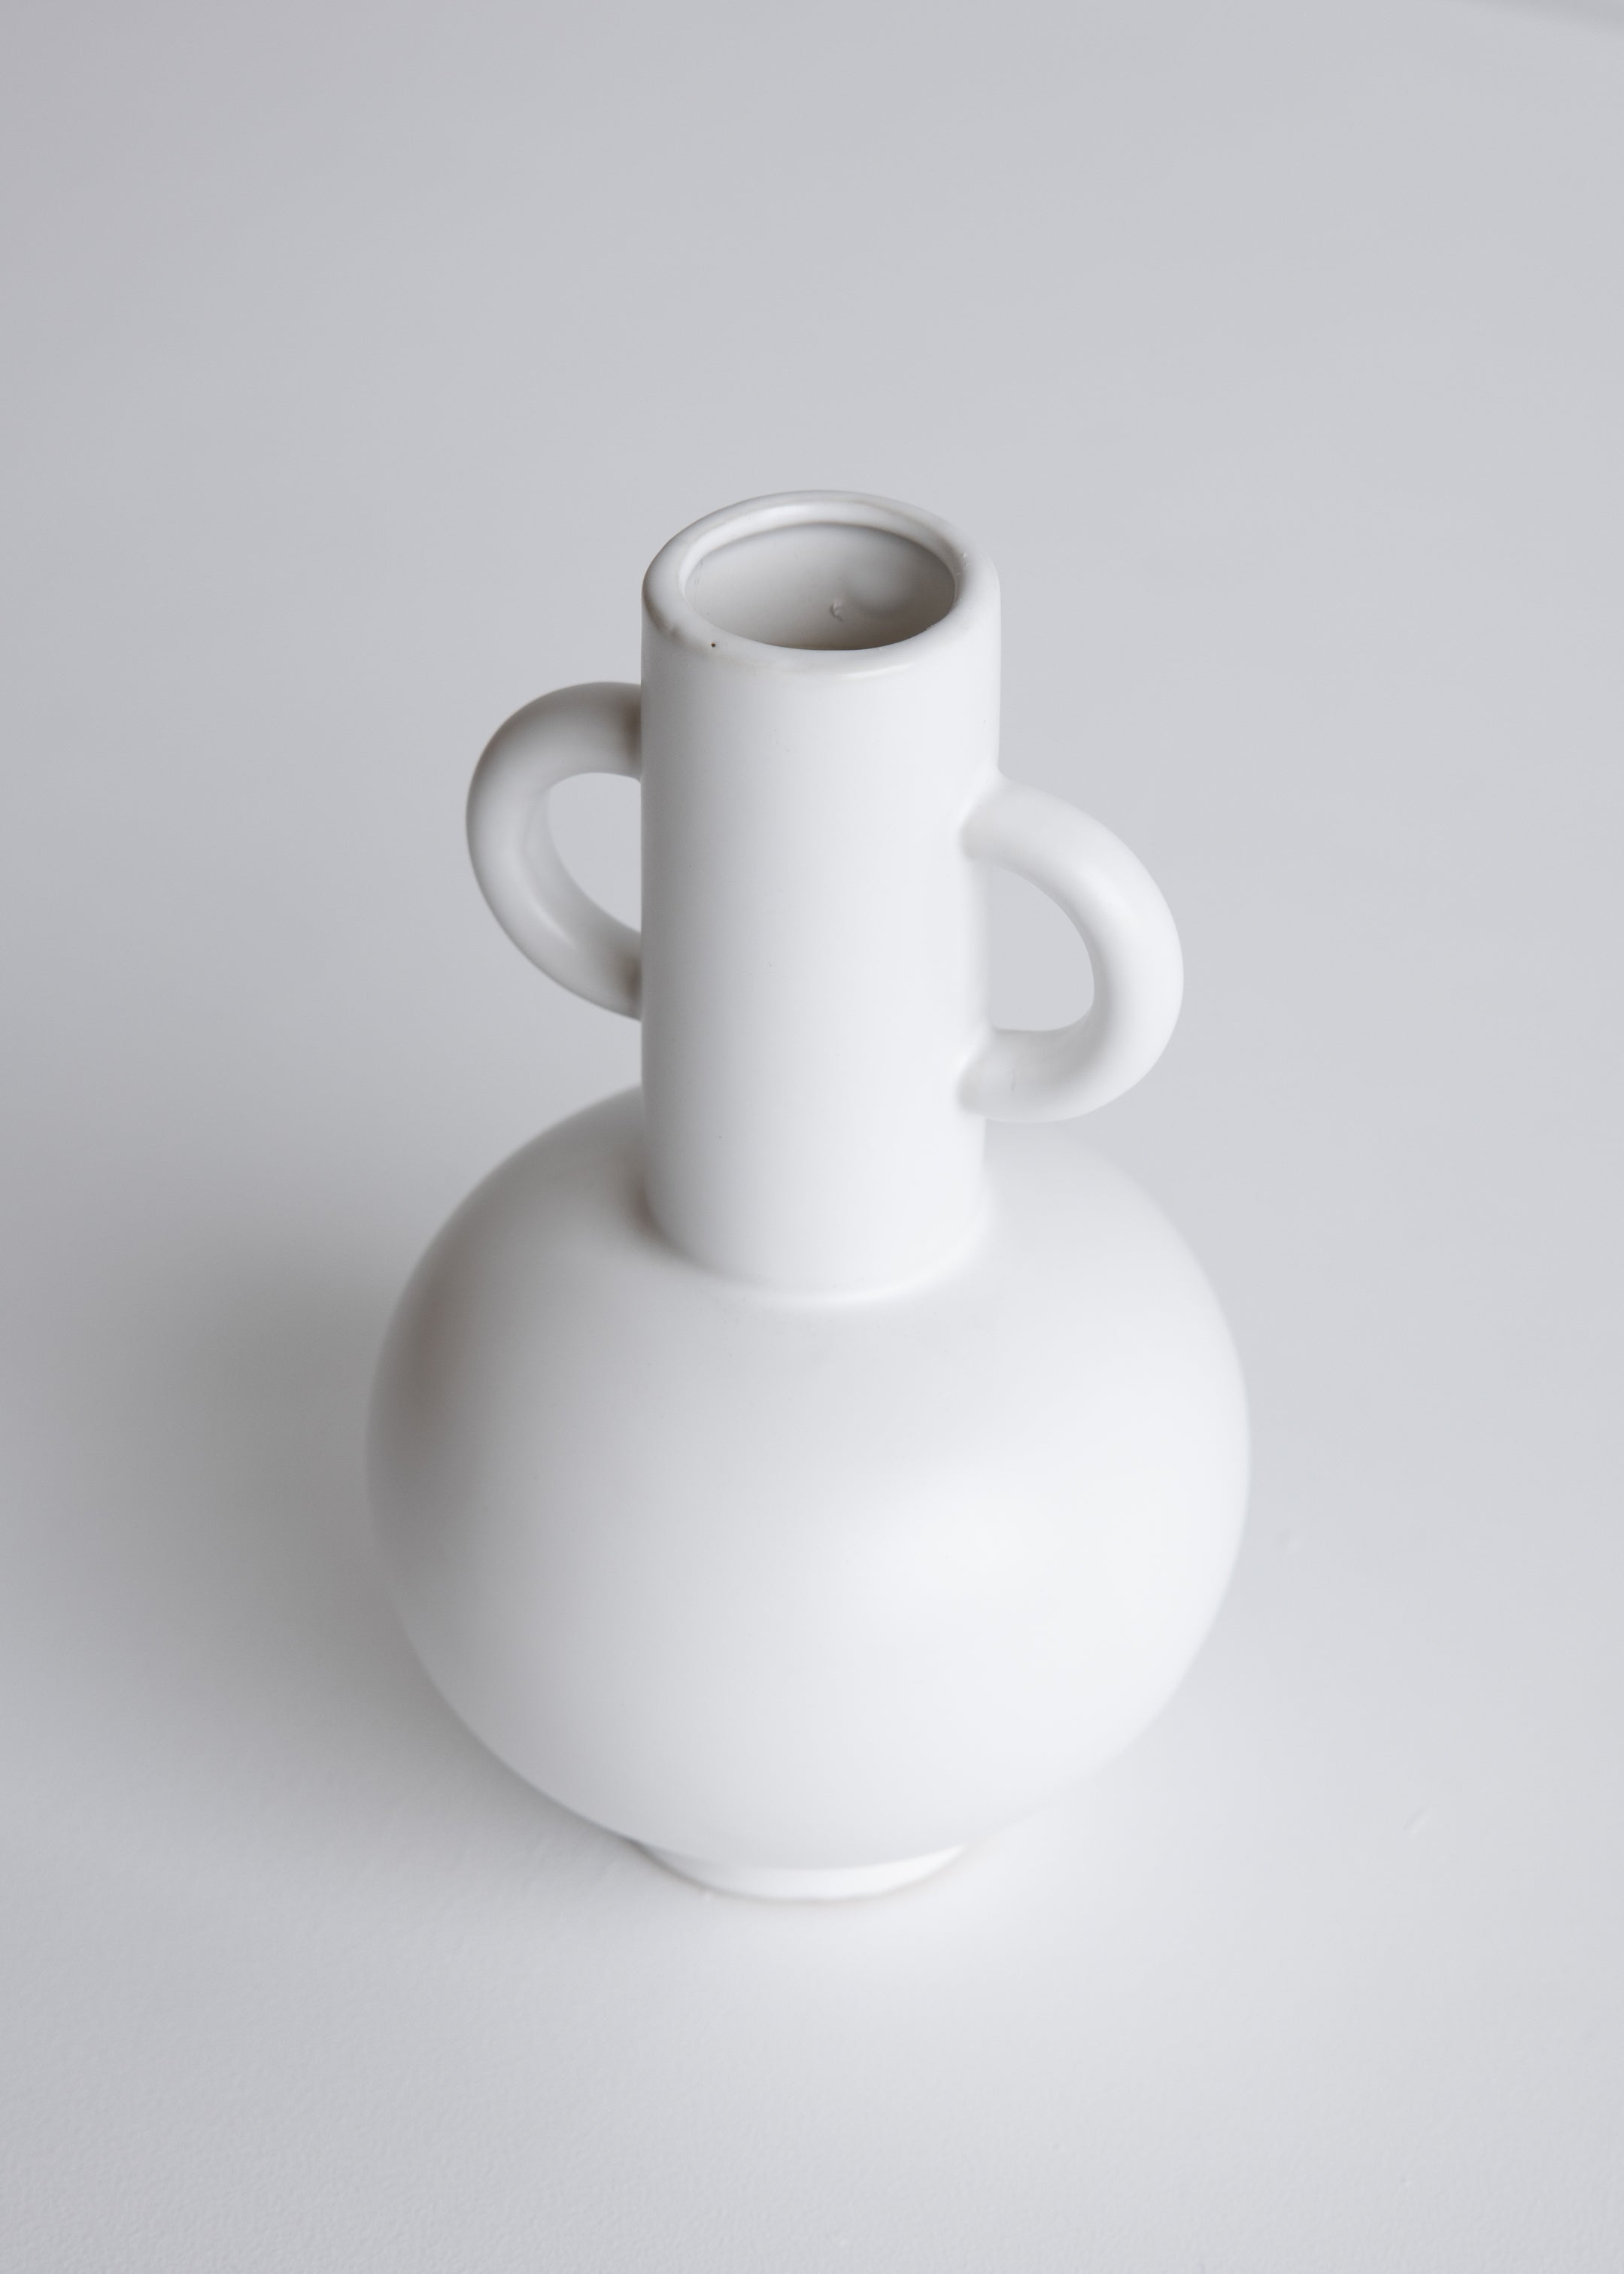 Louis Vase Small / White